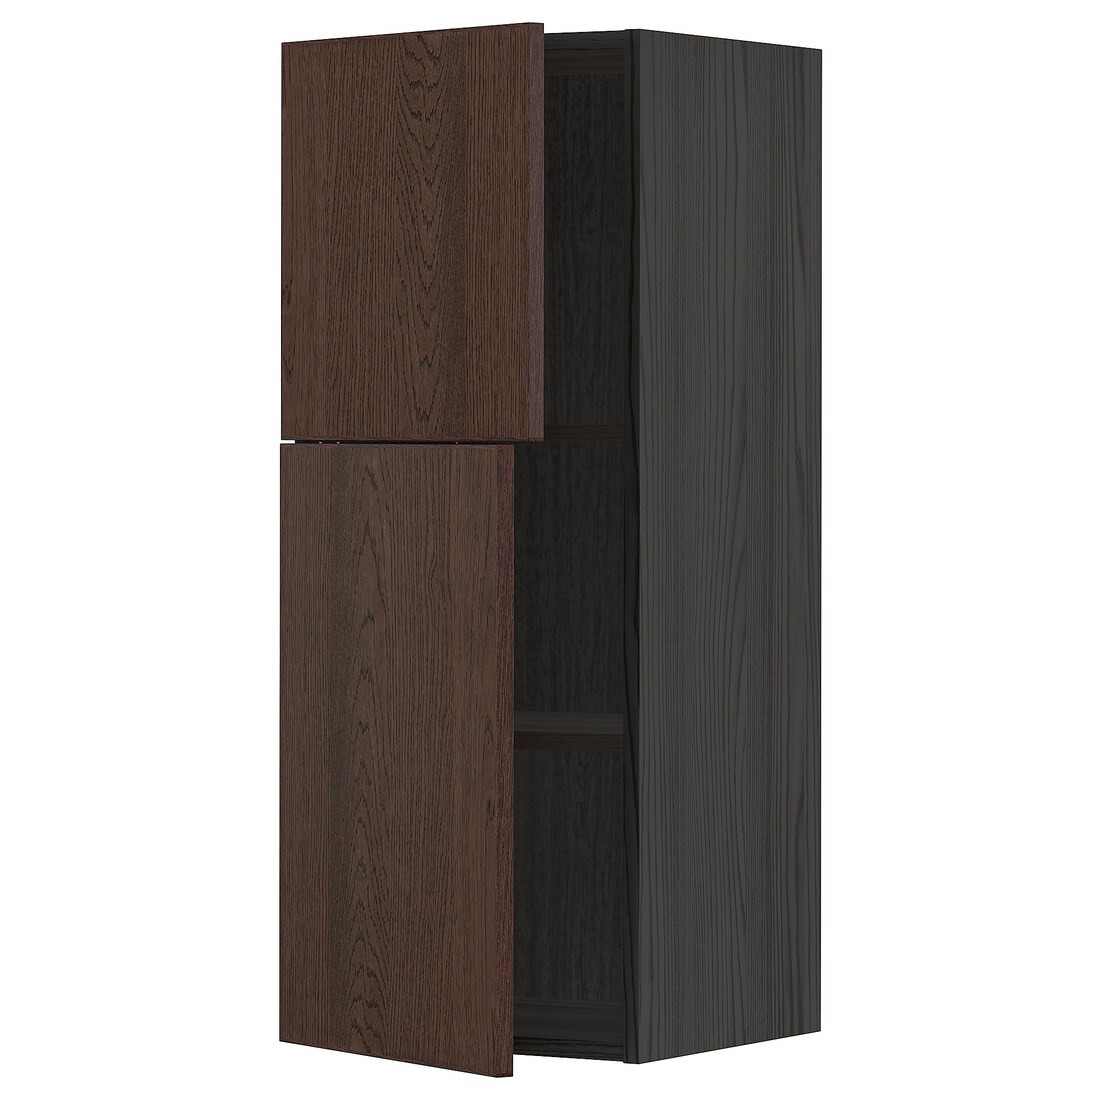 IKEA METOD МЕТОД Навесной шкаф с полками / 2 дверцы, черный / Sinarp коричневый, 40x100 см 99456005 | 994.560.05